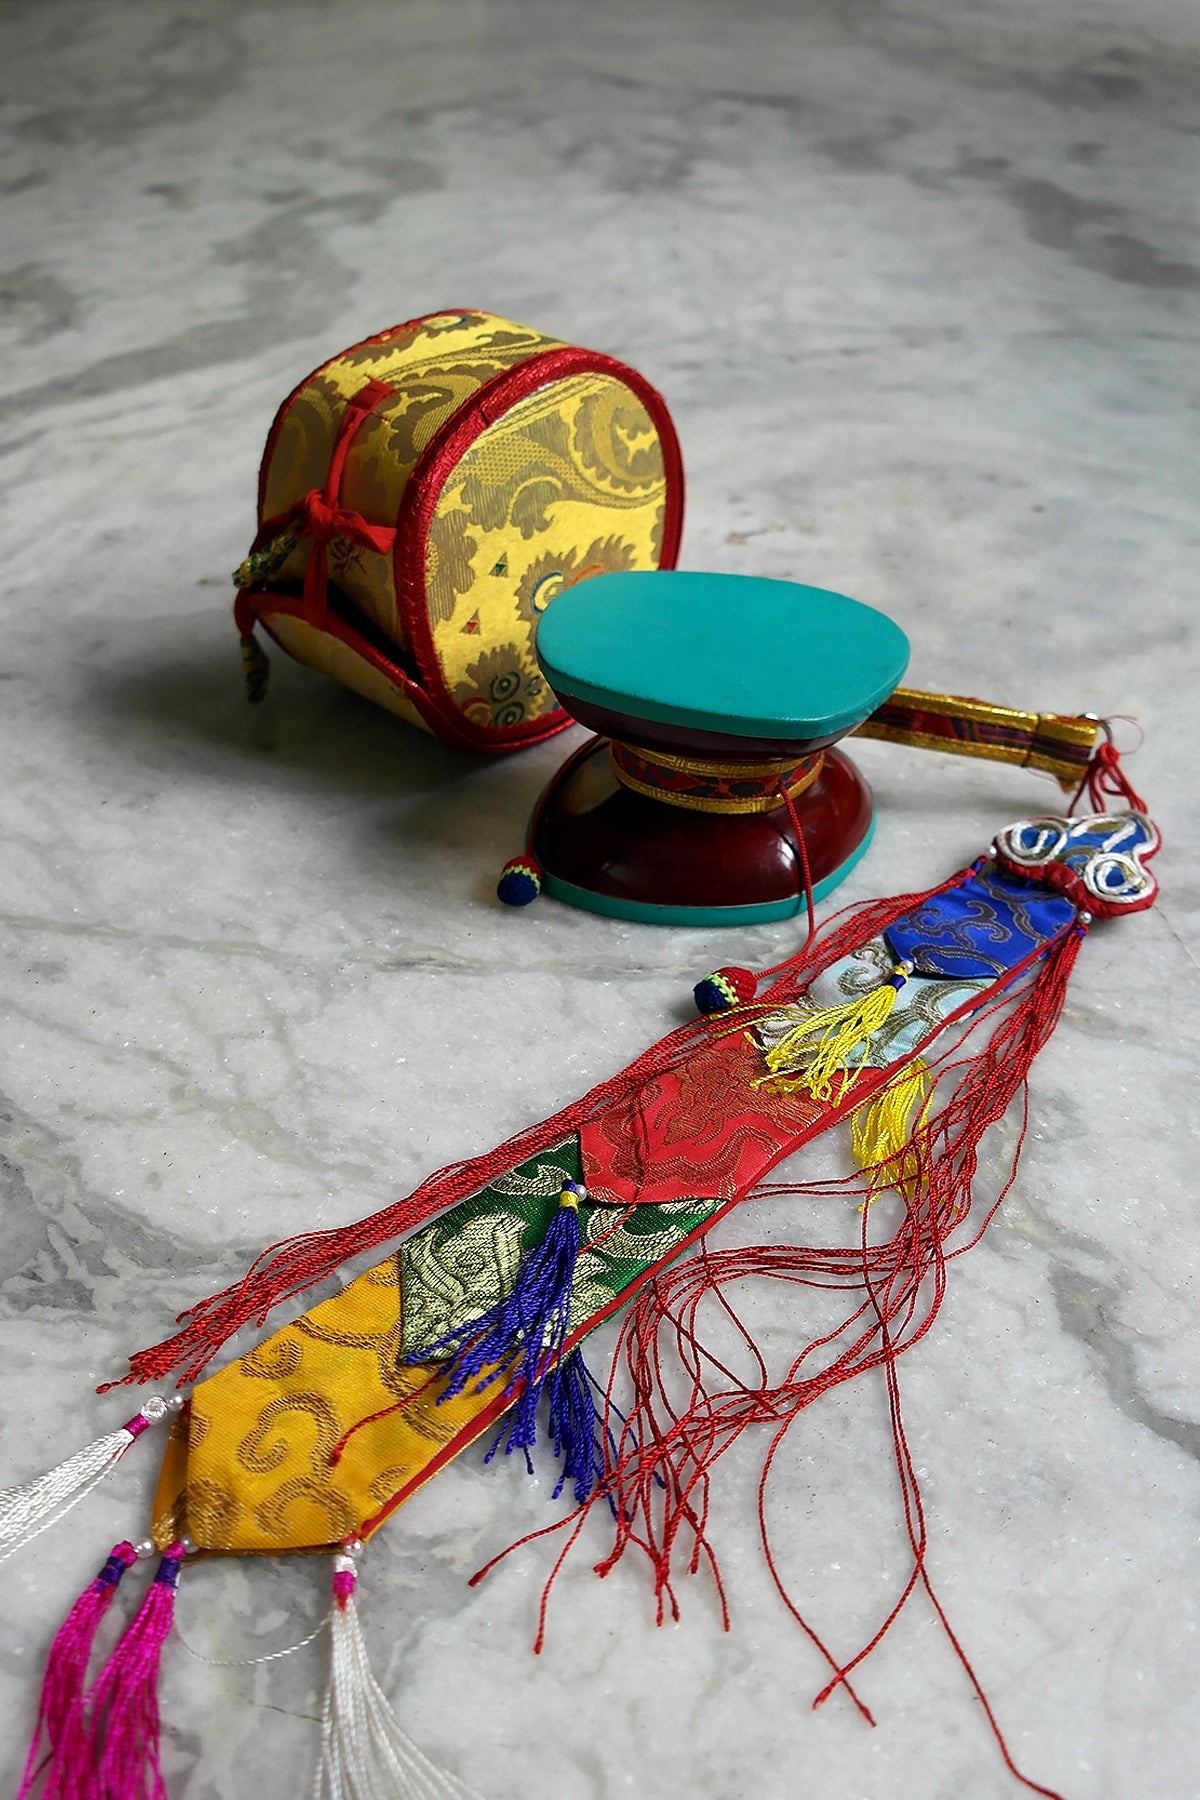 Handmade Buddhist Ritual Wooden Chod Drum